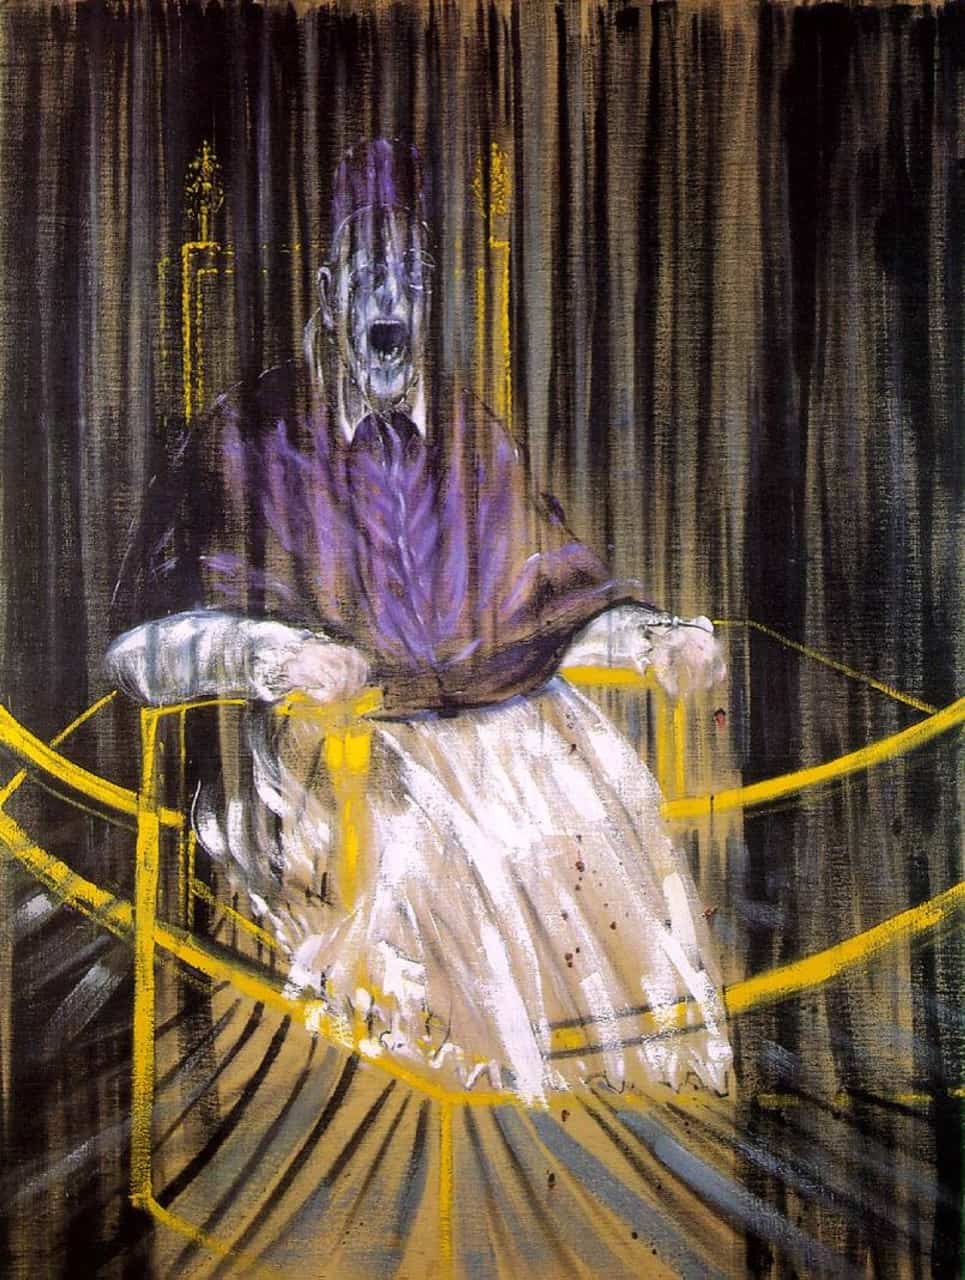 Francis Bacon. Estudio a partir del Retrato del Papa Inocencio X de Velázquez, 1953. Óleo, 153 x 118 cm. Des Moines Art Center, Iowa 